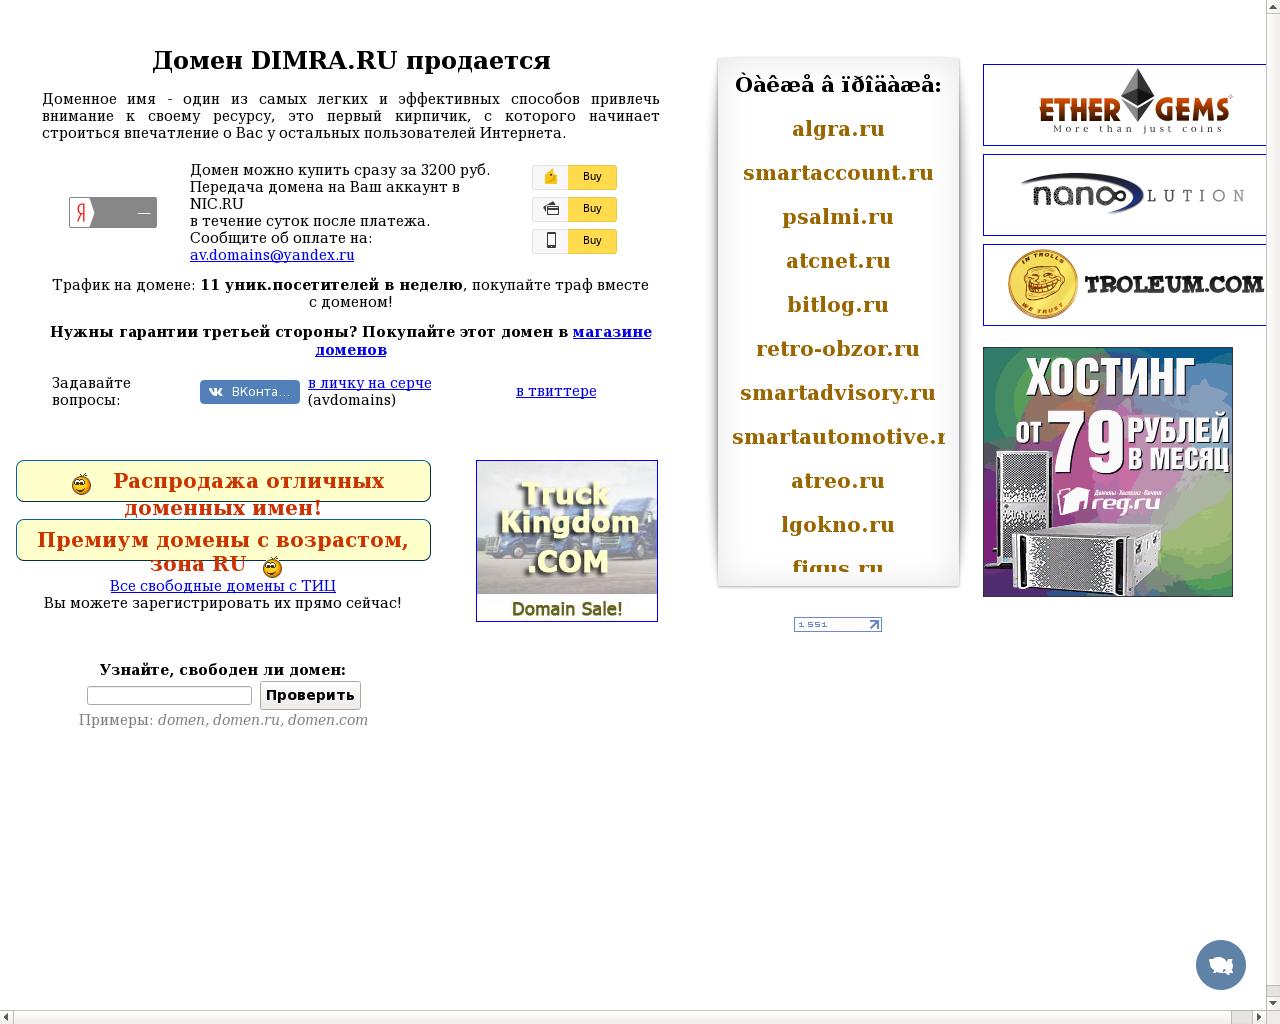 Изображение сайта dimra.ru в разрешении 1280x1024